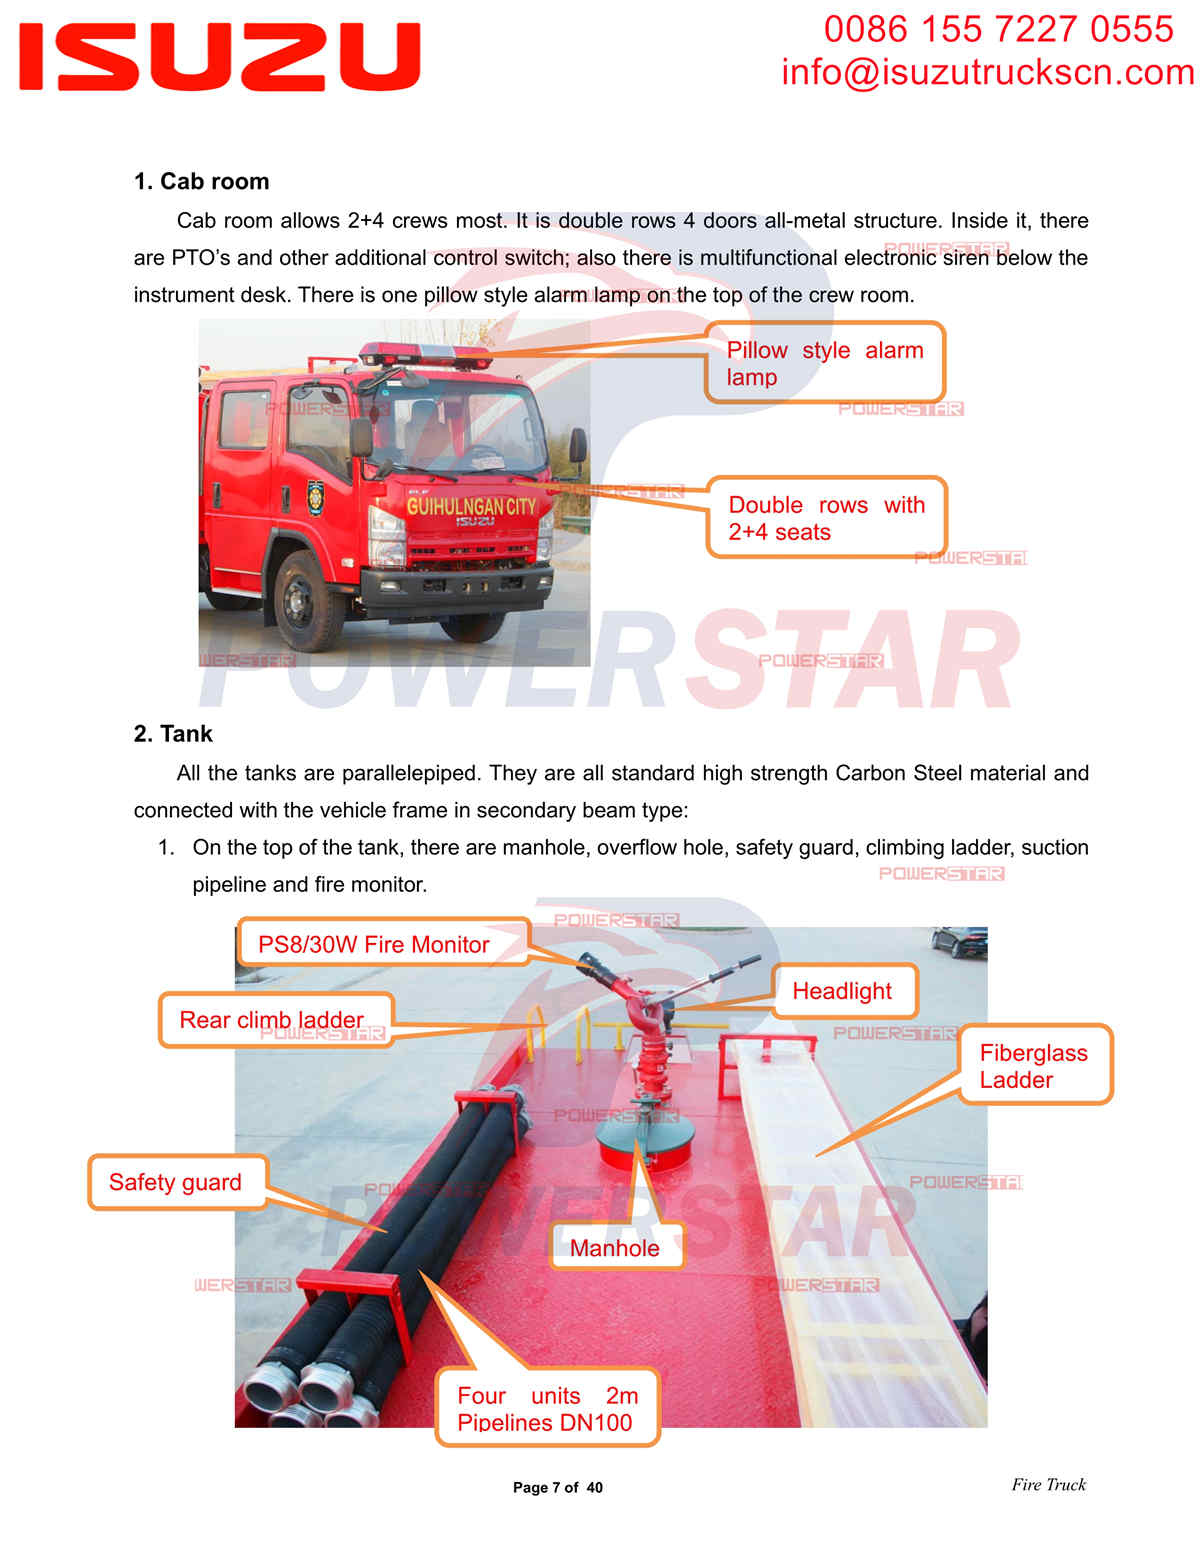 POWERSTAR ISUZU NQR Water Fire Trucks export to Philippines Davao